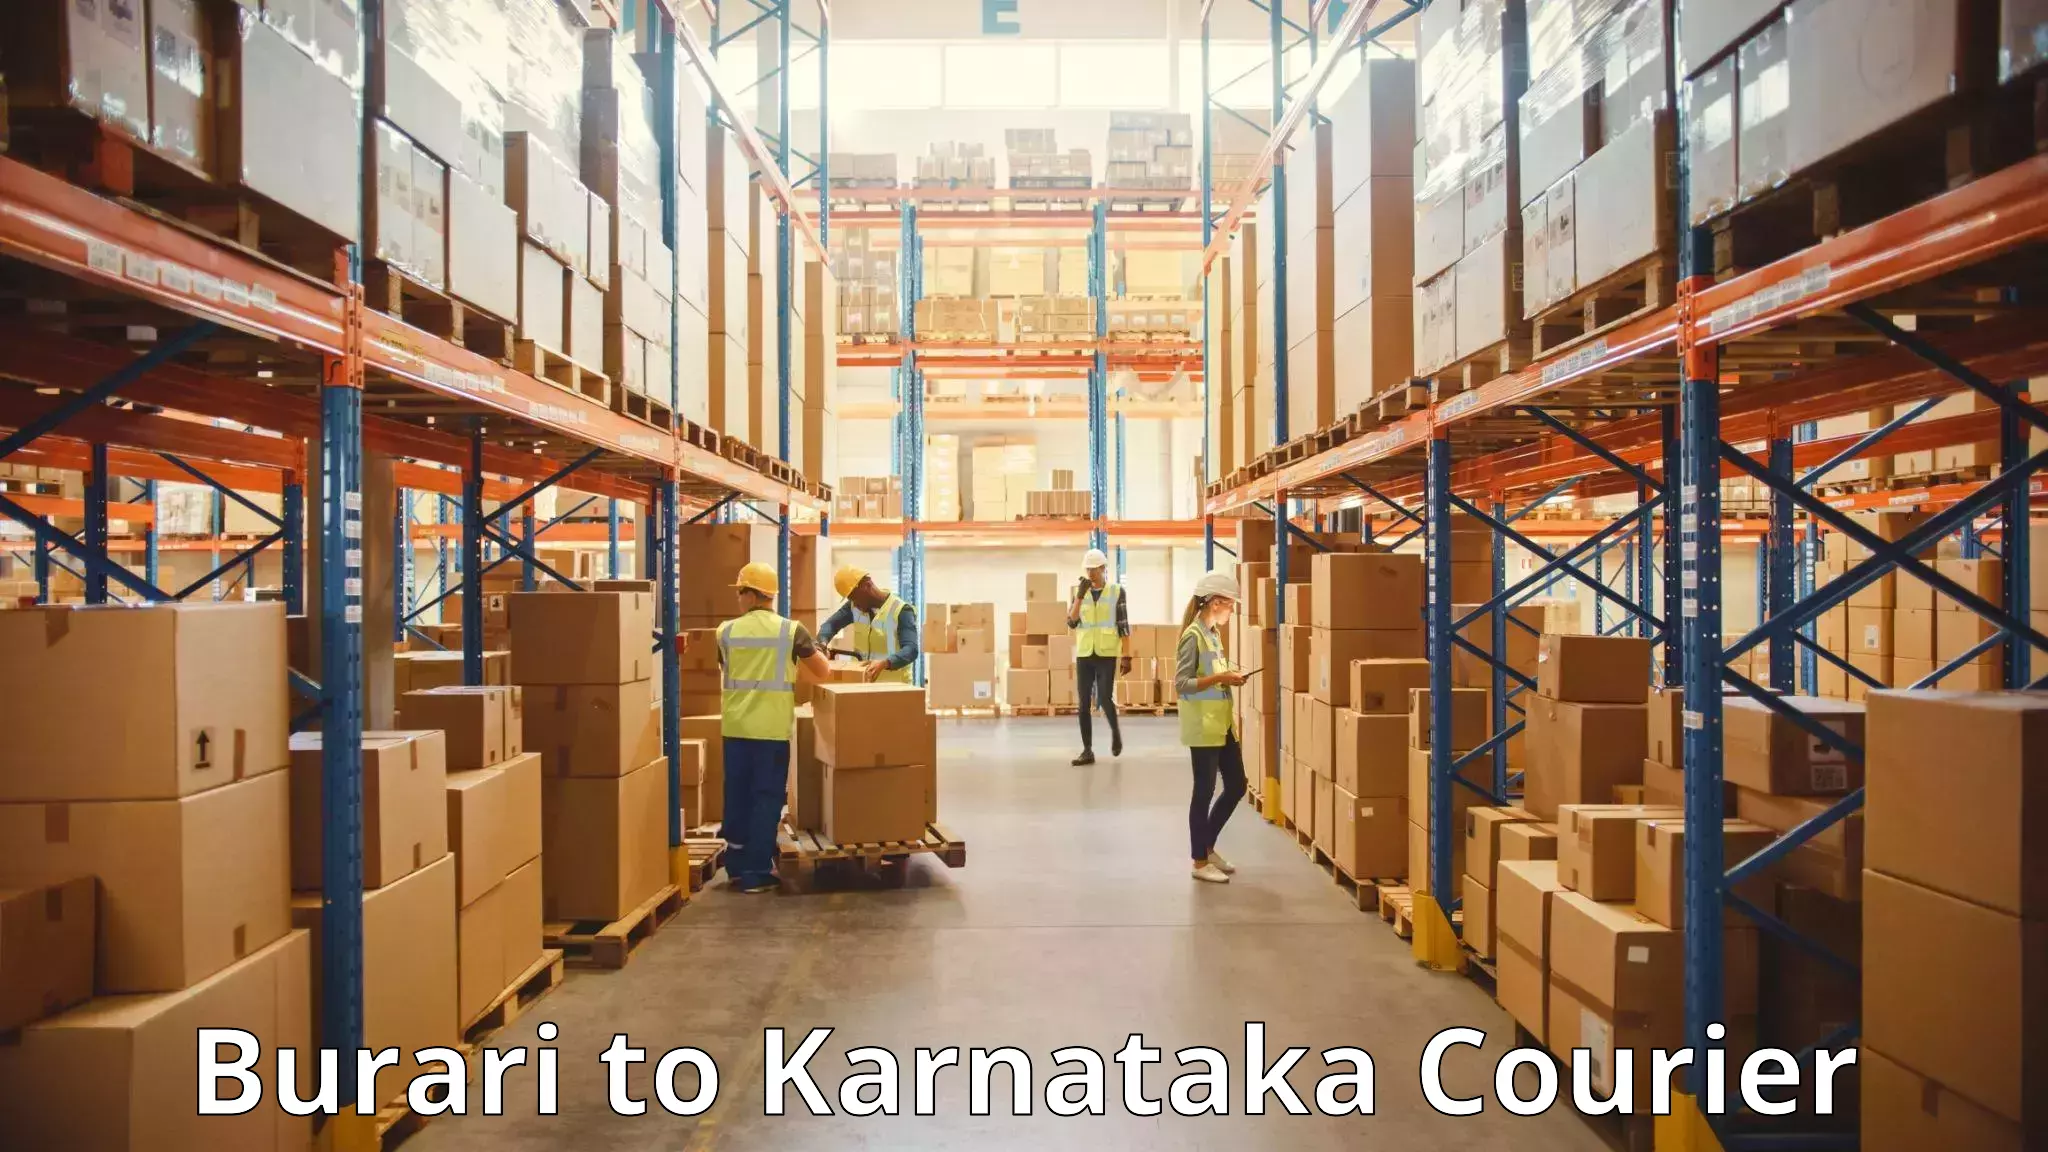 Baggage transport technology Burari to Karnataka